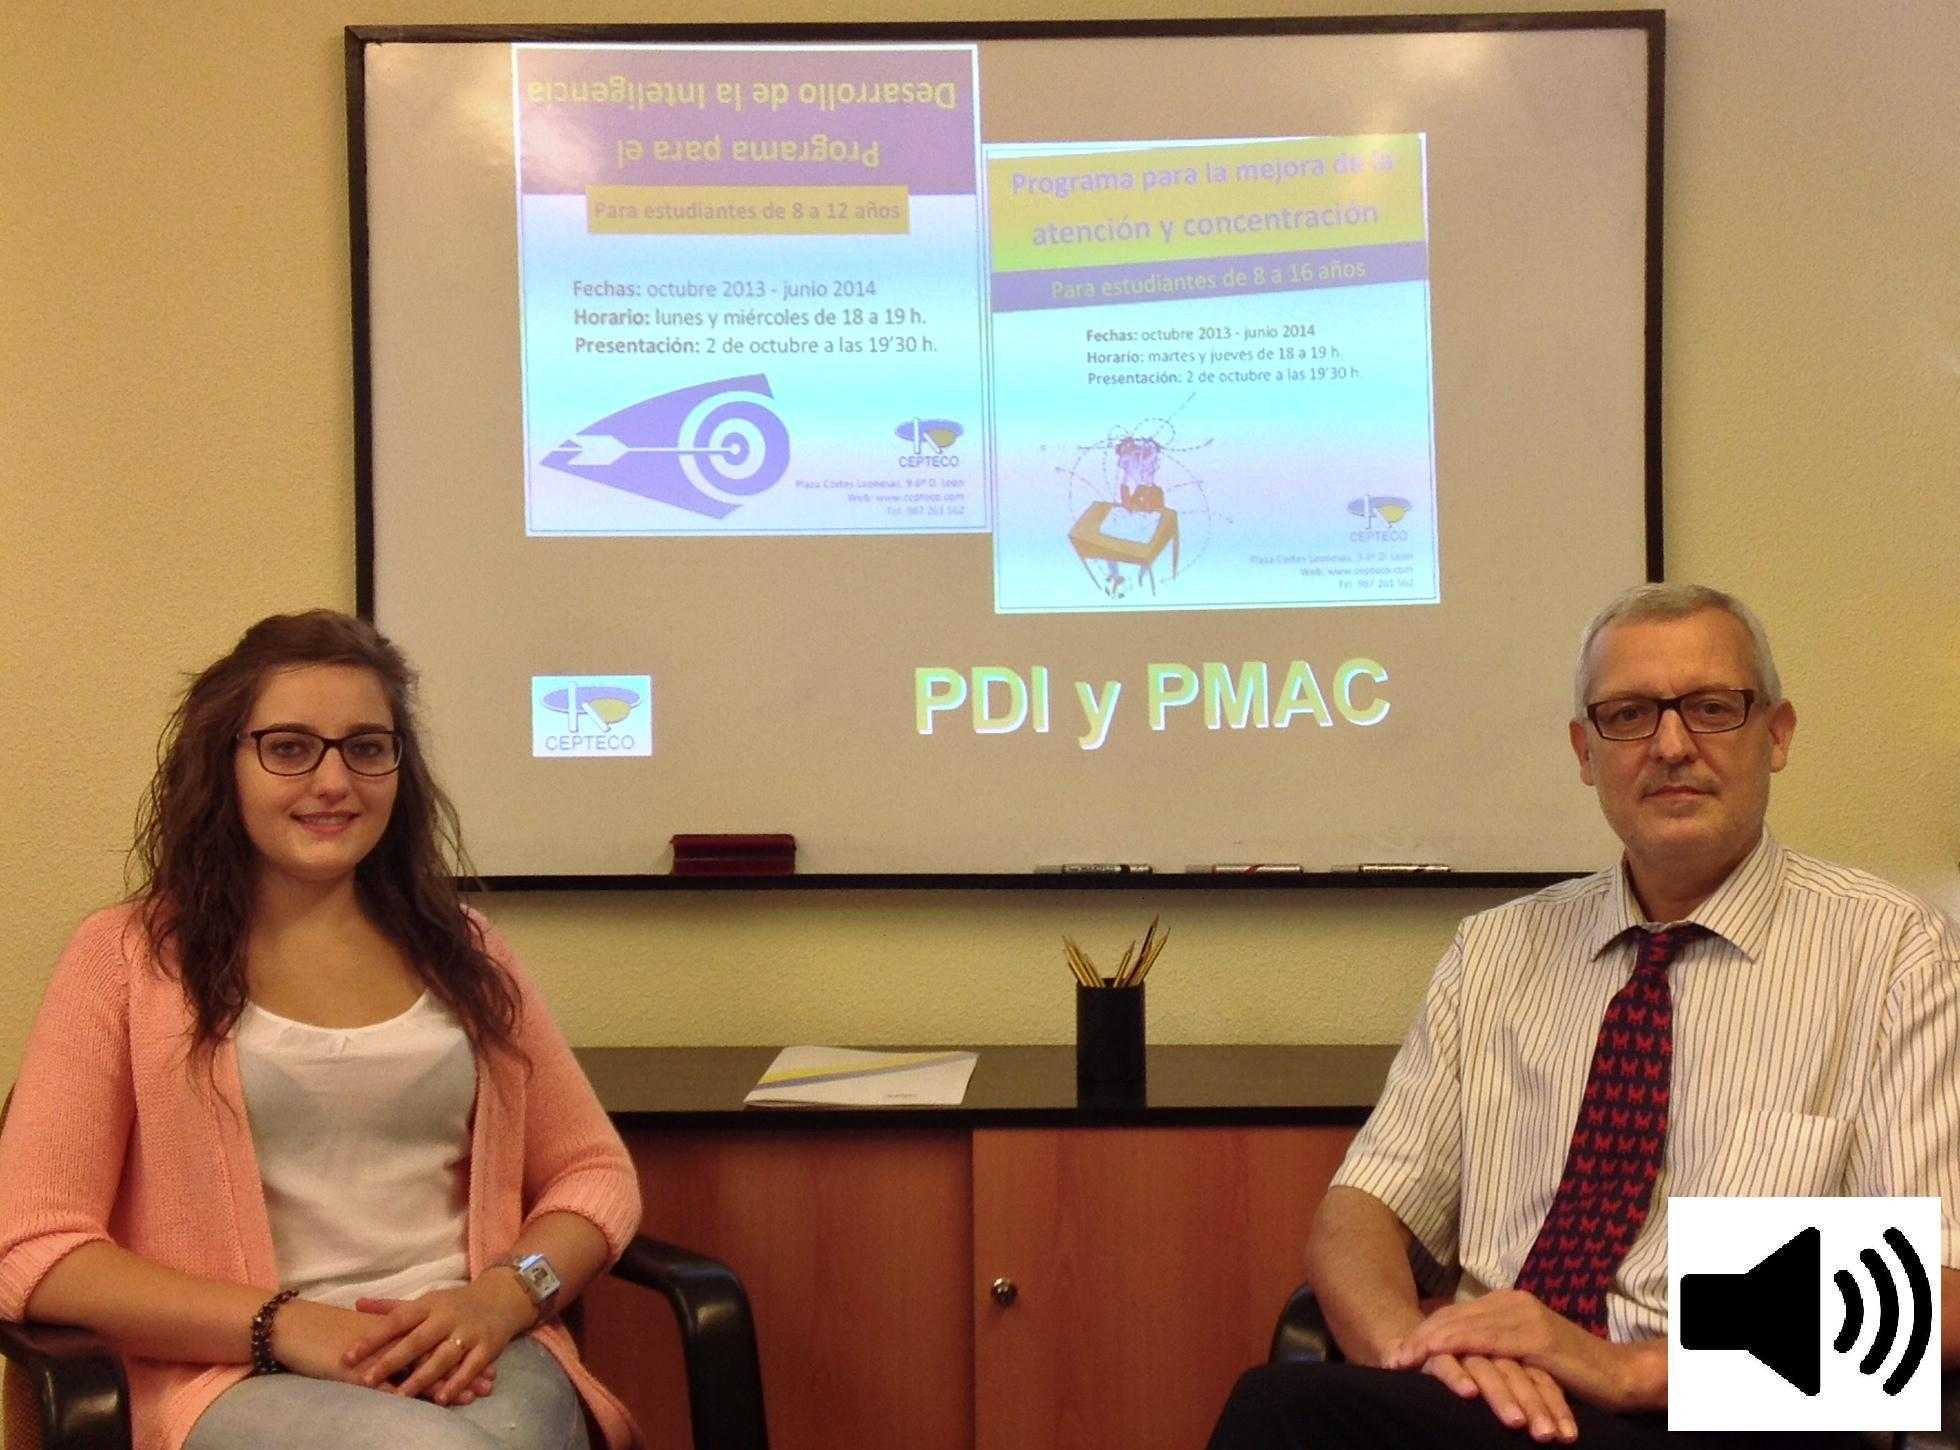 Presentación PDI-PMAC Onda Cero, 2 octubre 2013: Elena Díez y Miguel Ángel Cueto